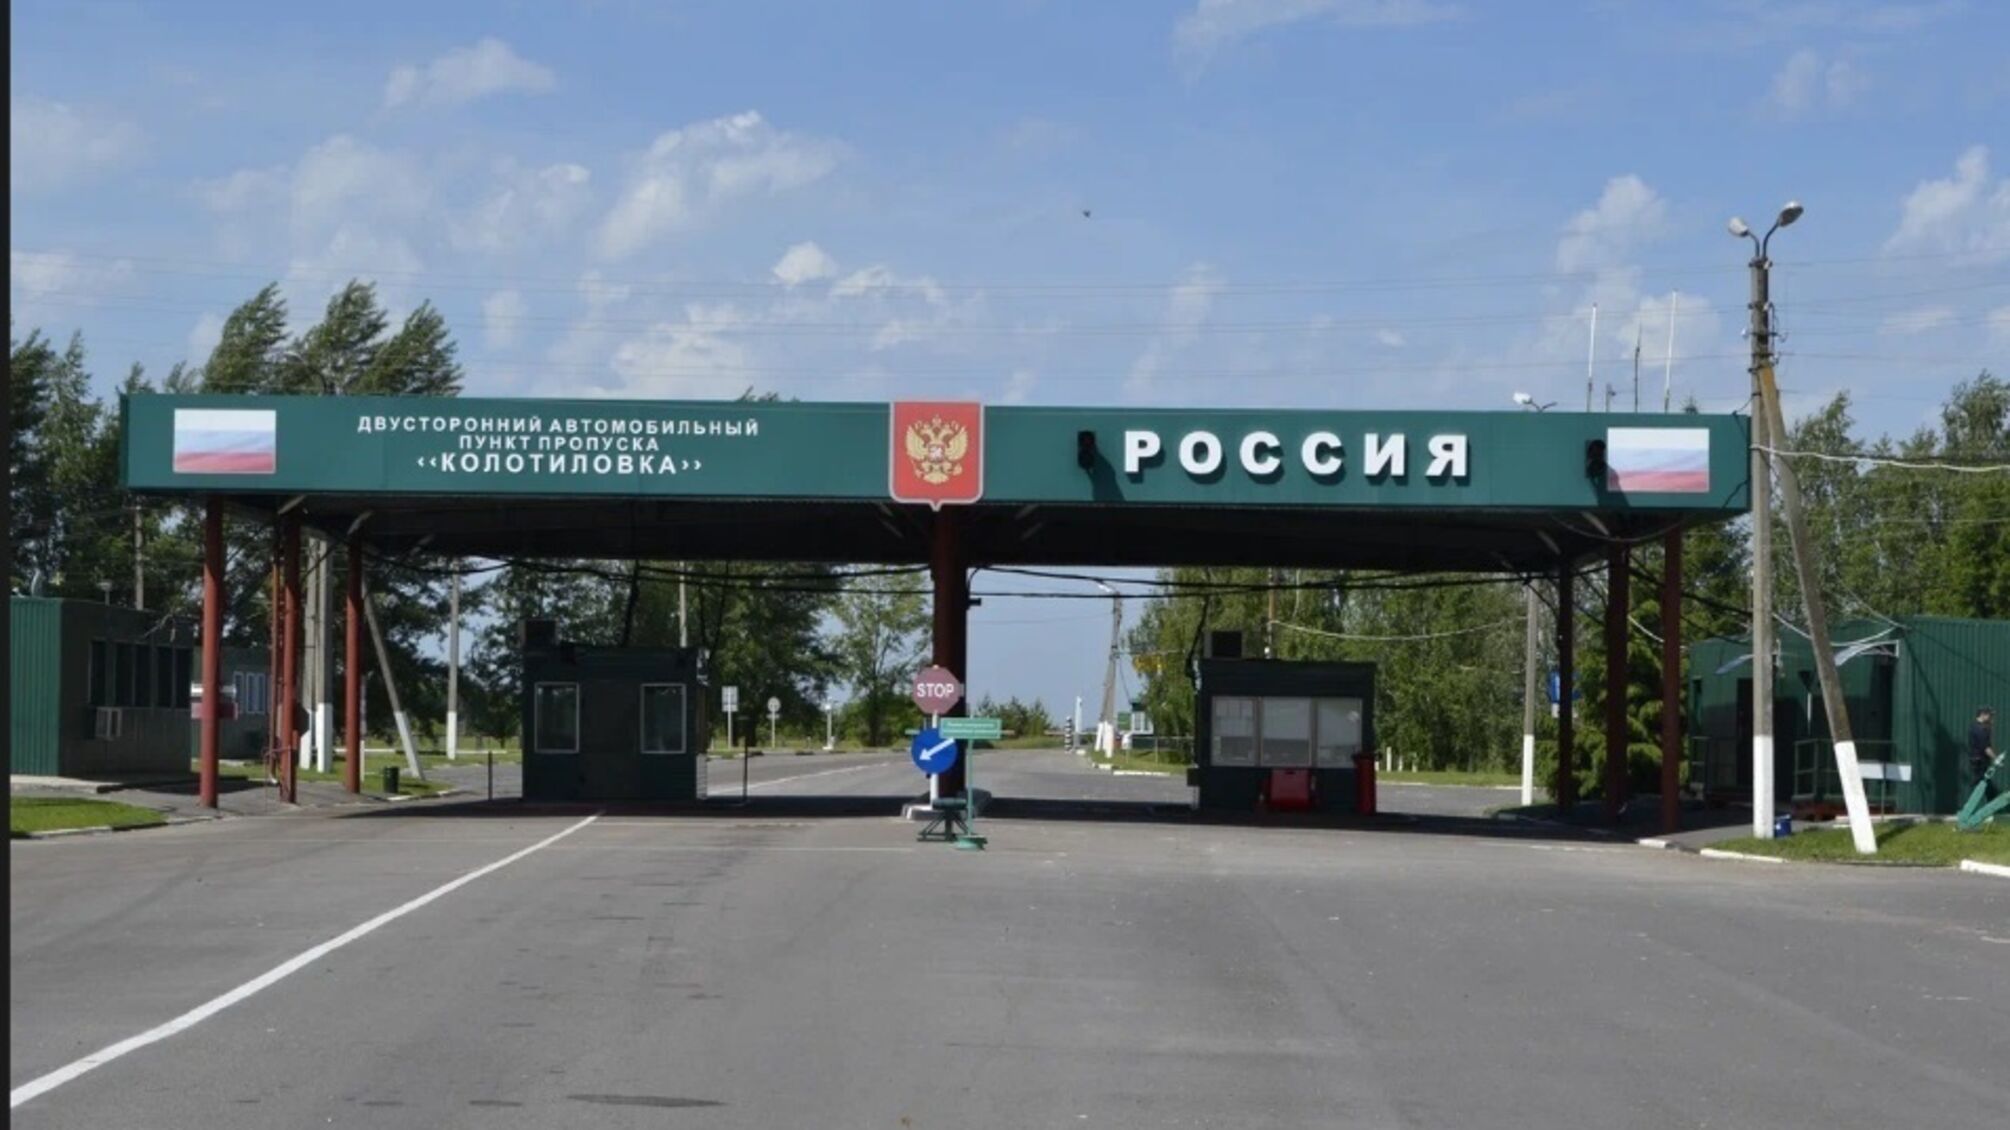 Українці можуть повернутись з окупованих територій і отримати допомогу: на кордоні з рф відновив роботу пункт пропуску